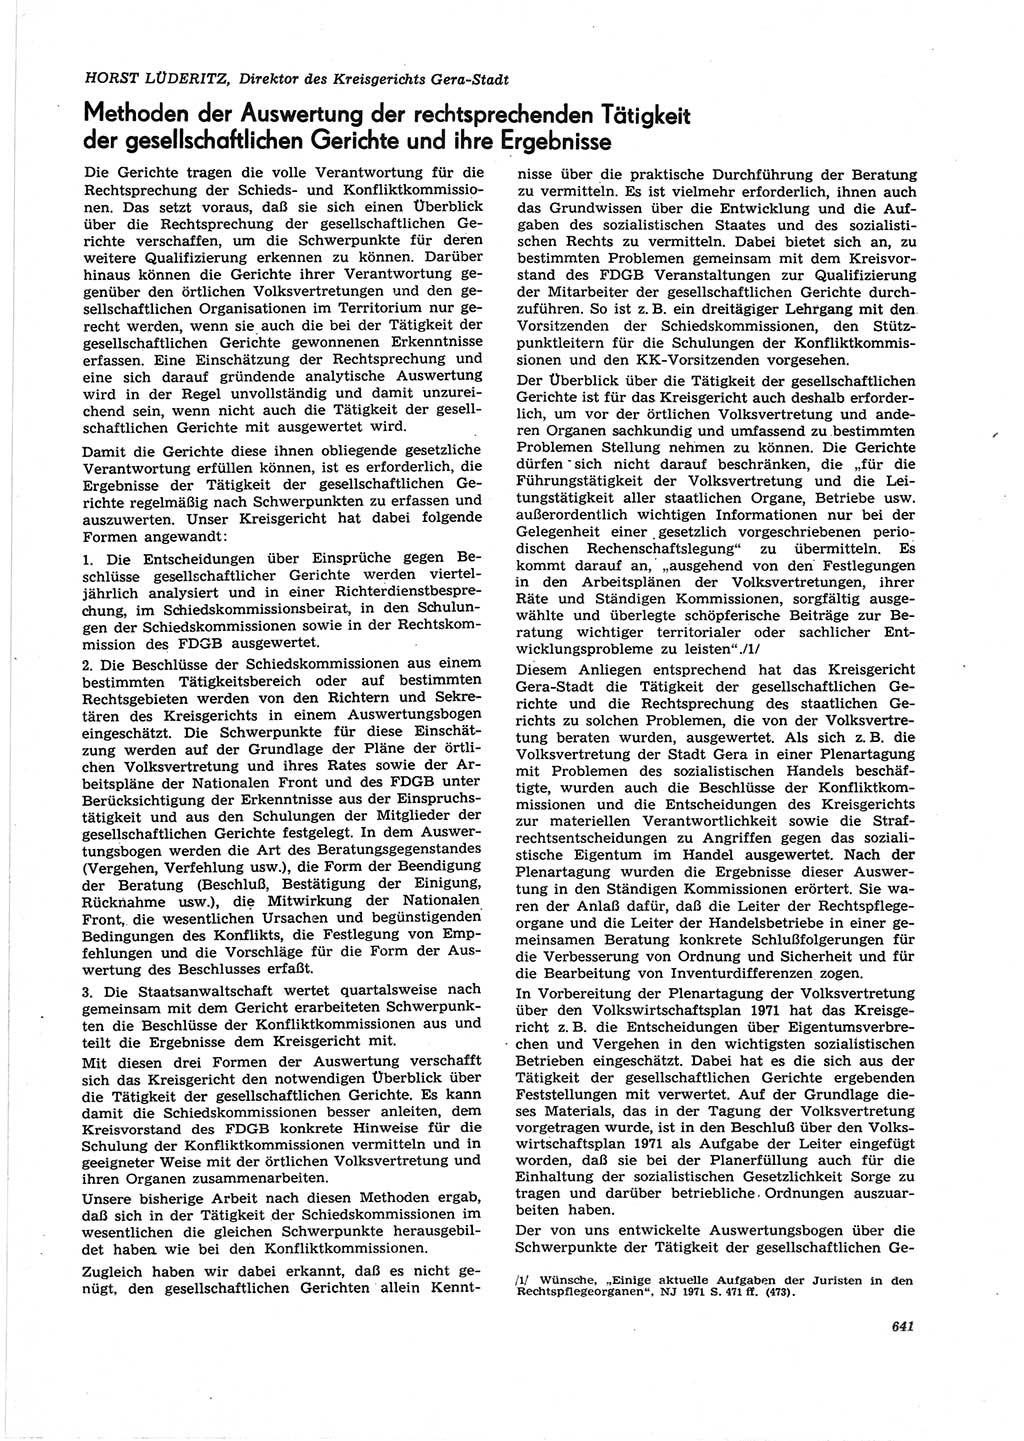 Neue Justiz (NJ), Zeitschrift für Recht und Rechtswissenschaft [Deutsche Demokratische Republik (DDR)], 25. Jahrgang 1971, Seite 641 (NJ DDR 1971, S. 641)